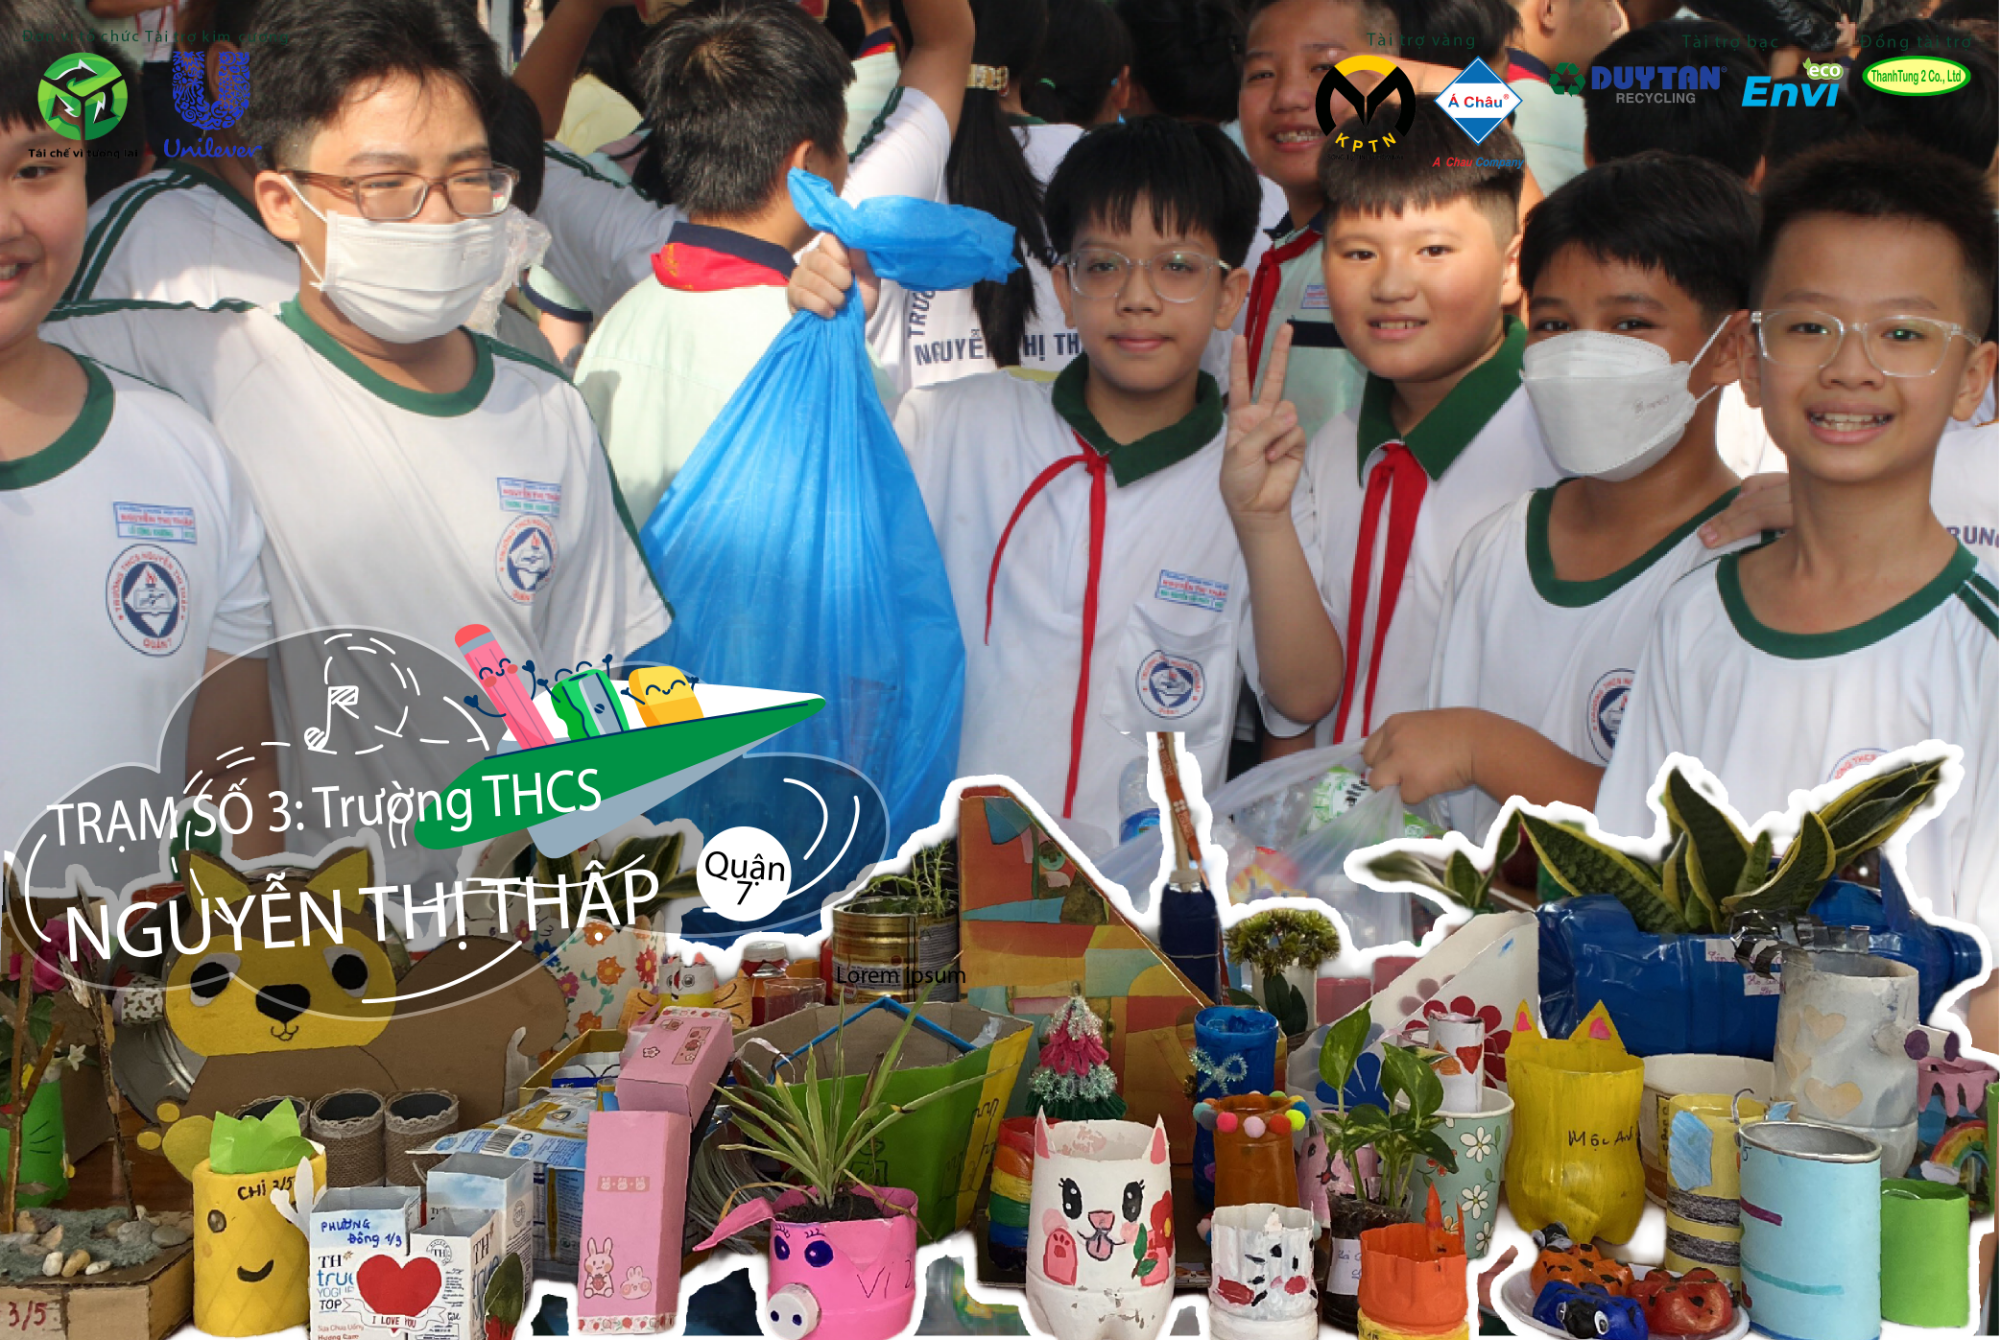 Tái chế học đường - Trạm 03: "Bước nhảy ngàn cân" của Bãi chôn lấp rác cùng các bạn học sinh Trường THCS Nguyễn Thị Thập!